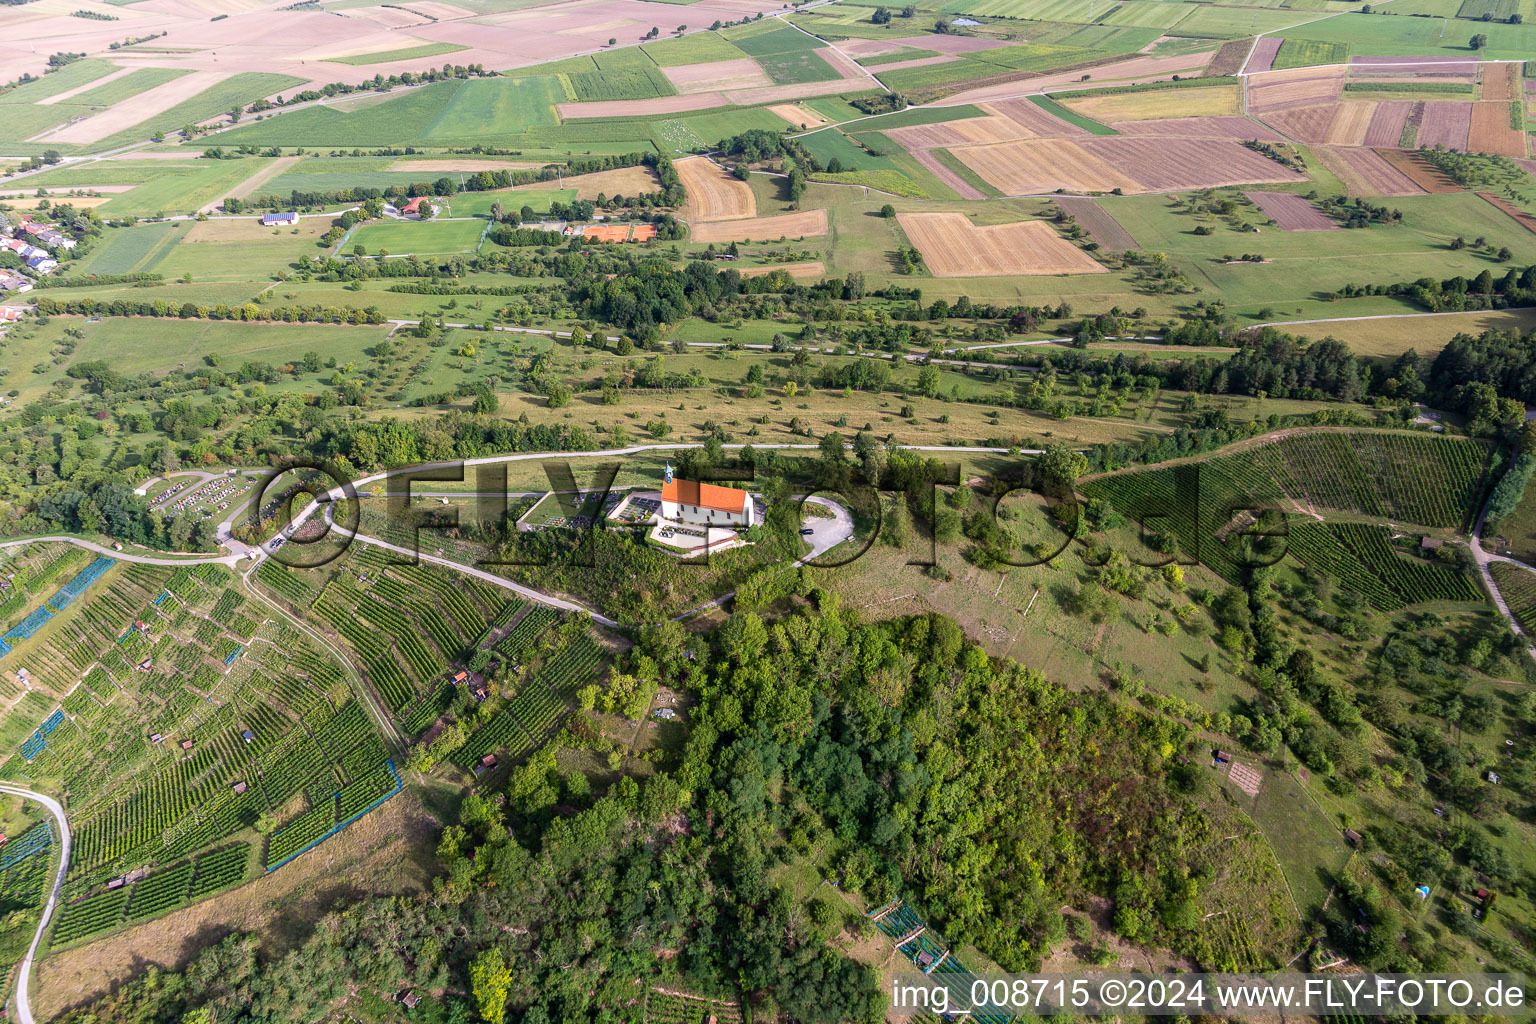 Vue aérienne de Bâtiment d'église en bordure de champs agricoles et de zones agricoles à Wurmlingen à Rottenburg am Neckar dans le département Bade-Wurtemberg, Allemagne